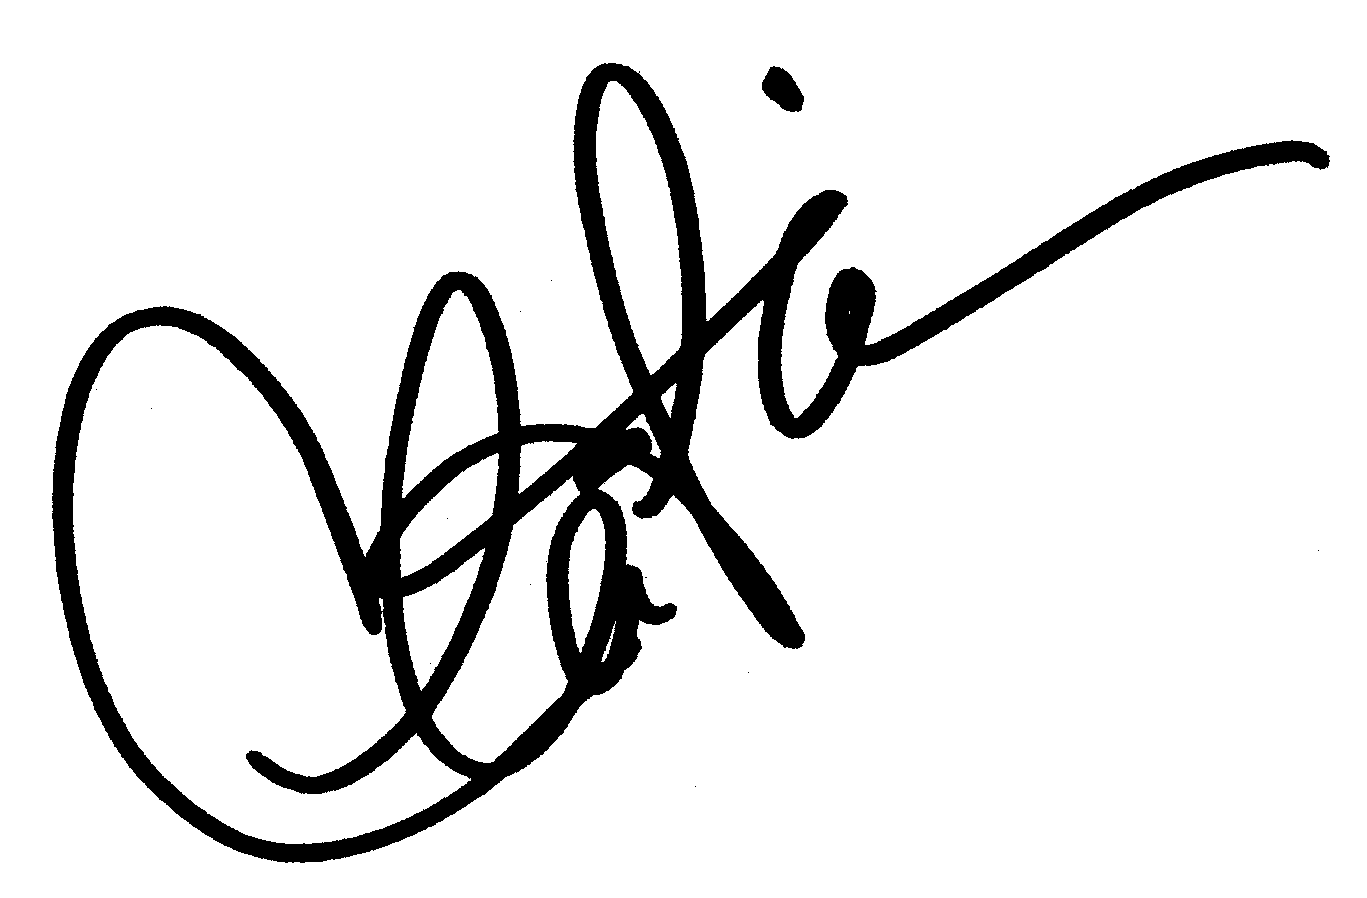 Charlie Sheen autograph facsimile